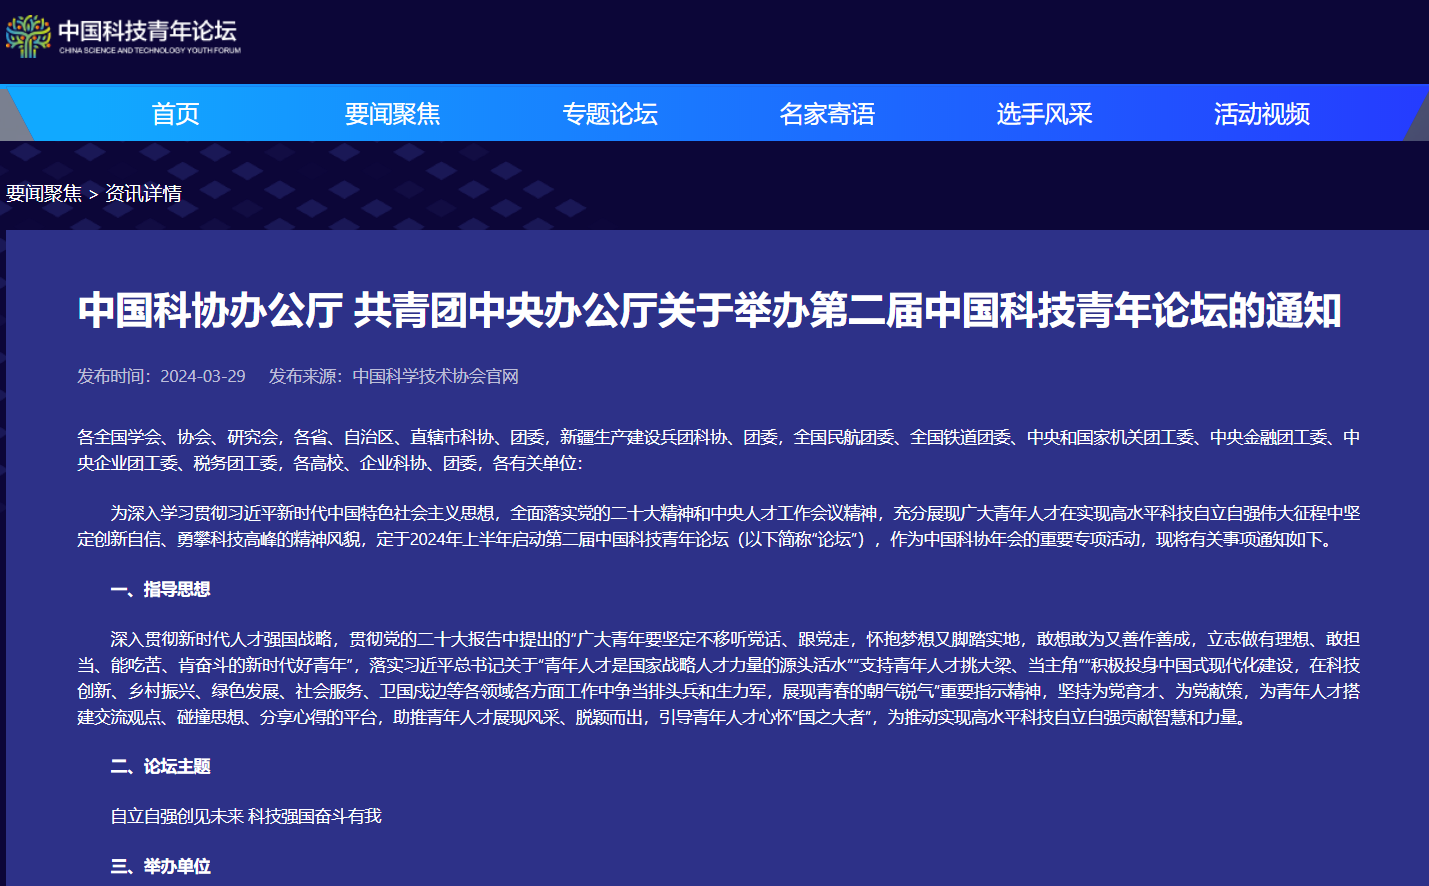 科技通知：《中国科协办公厅 共青团中央办公厅 关于举办第二届中国科技青年论坛的通知》